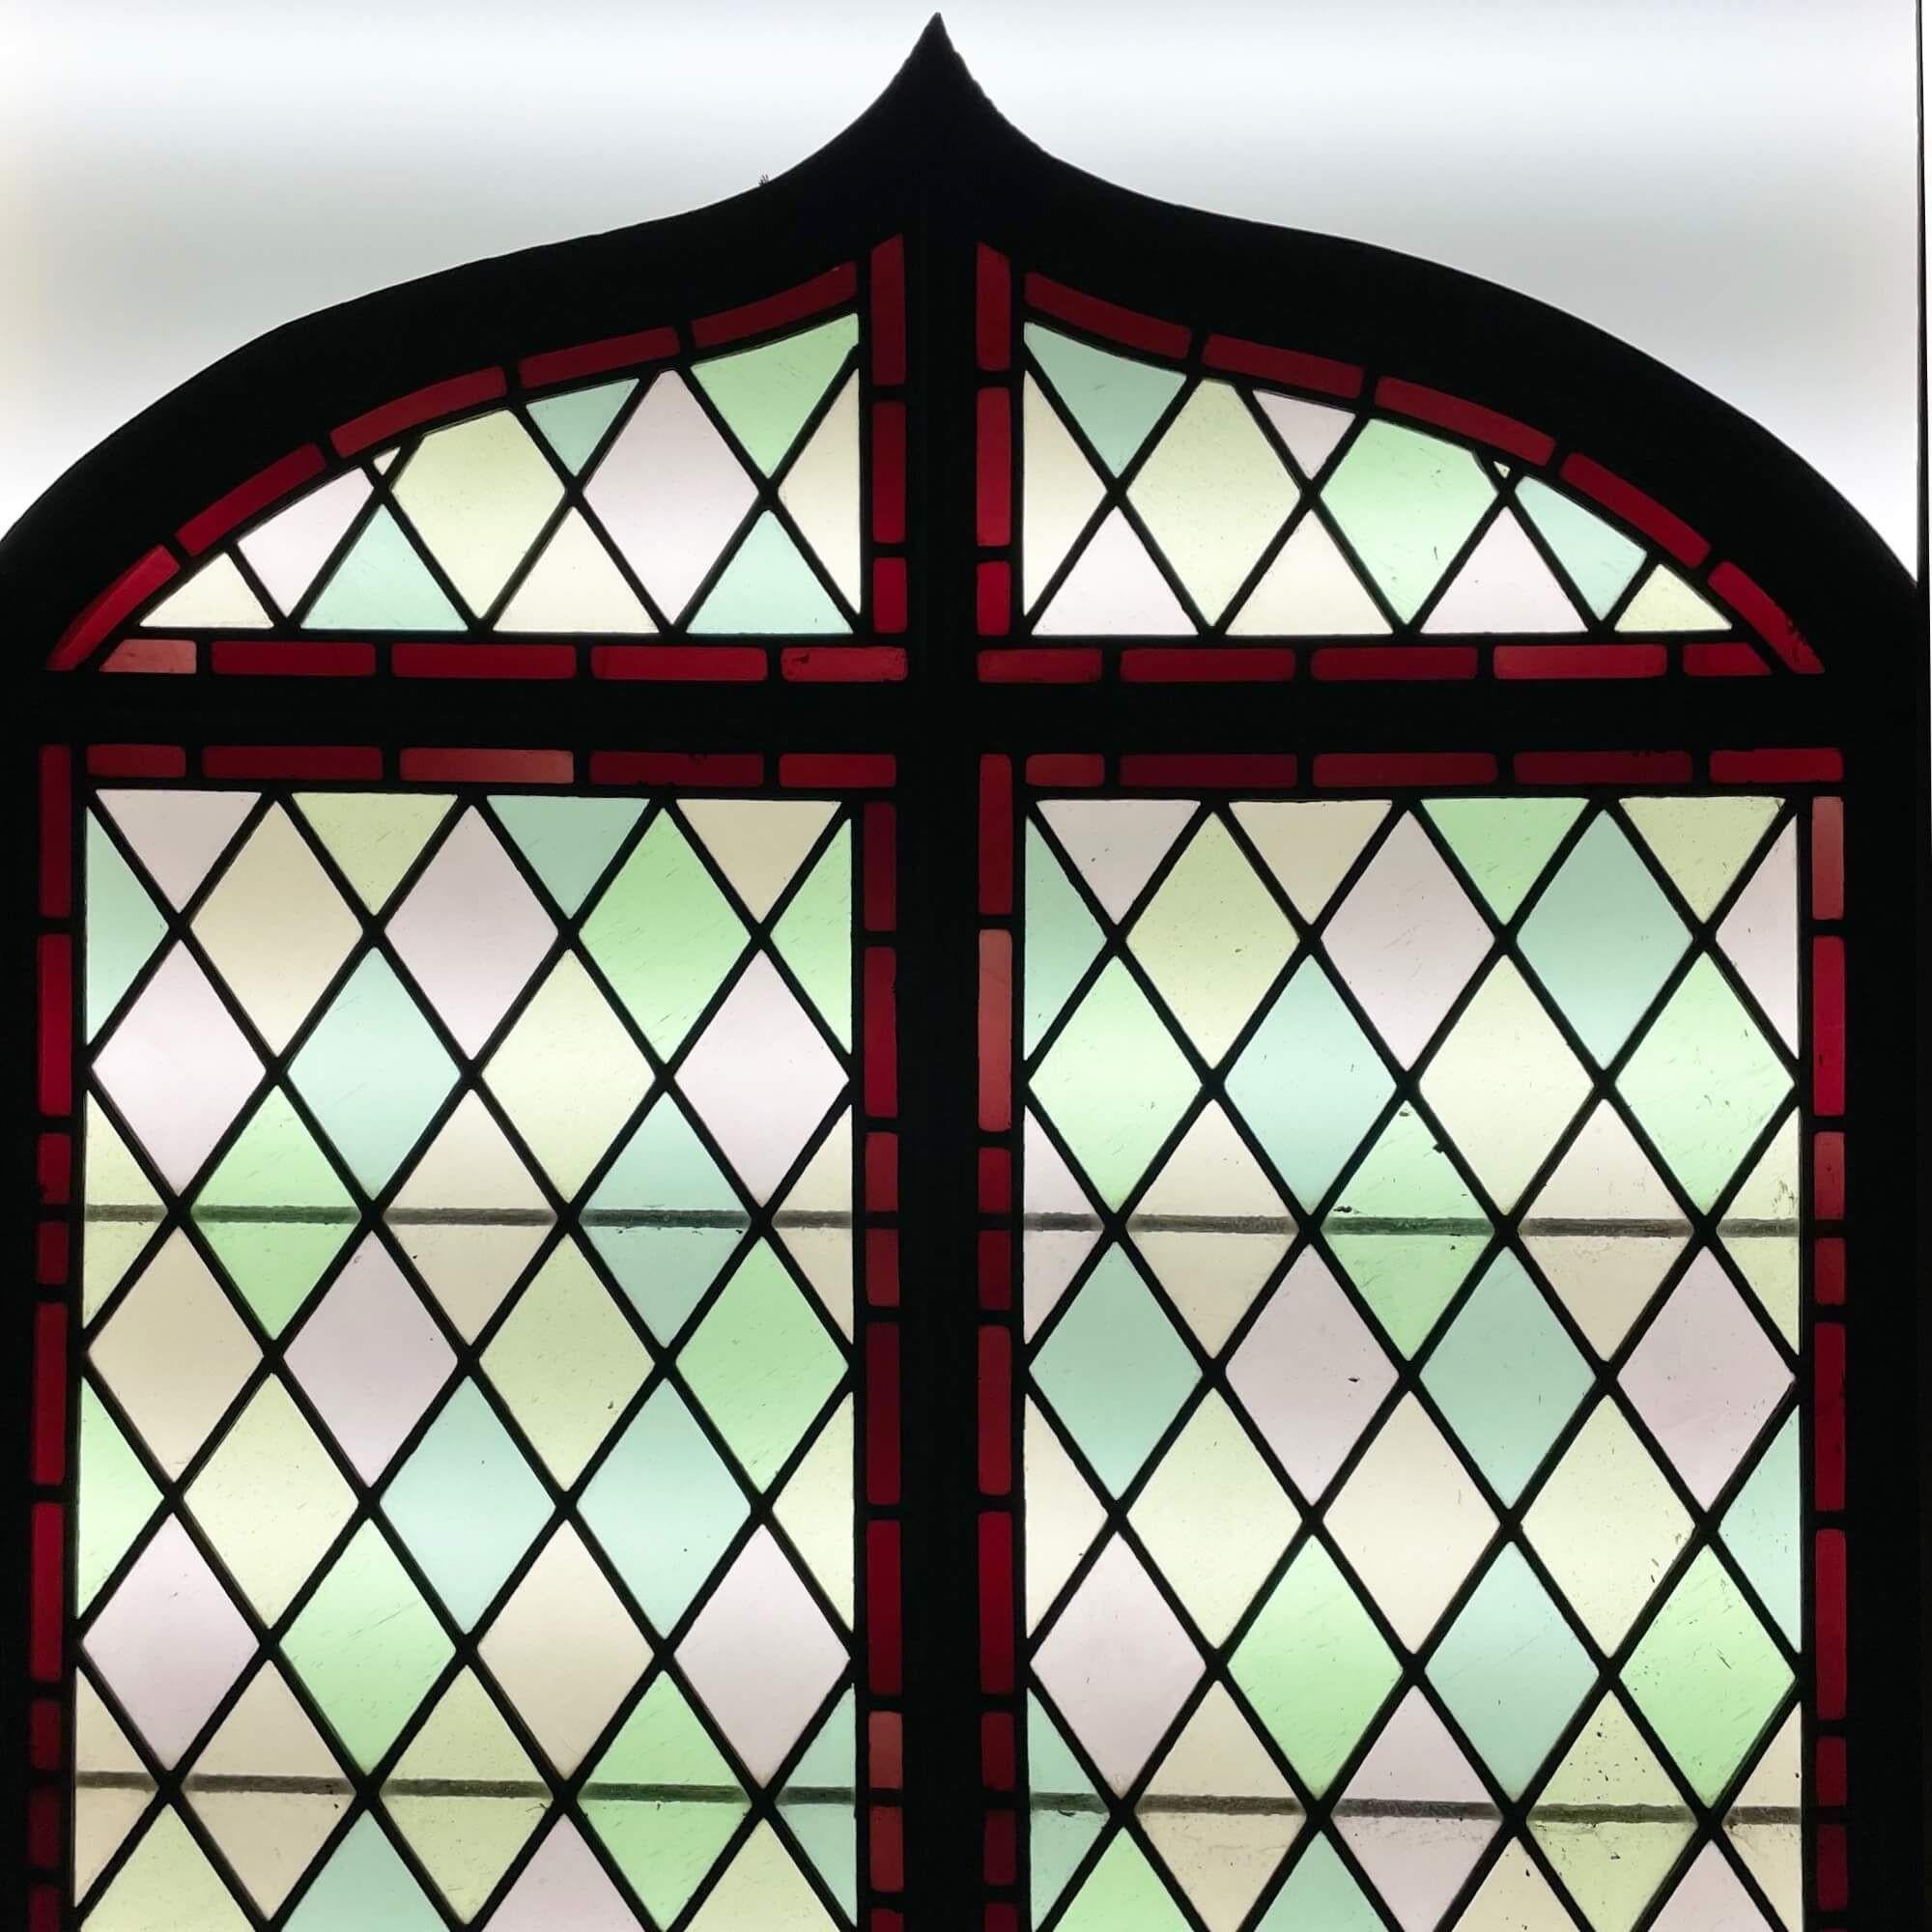 Un ancien vitrail victorien en arc de cercle datant d'environ 1890. Cet objet d'art anglais, à la fois simple et élégant, présente un motif en treillis et un sommet en arc brisé inhabituel, mettant en valeur un design classique et attrayant.

Les